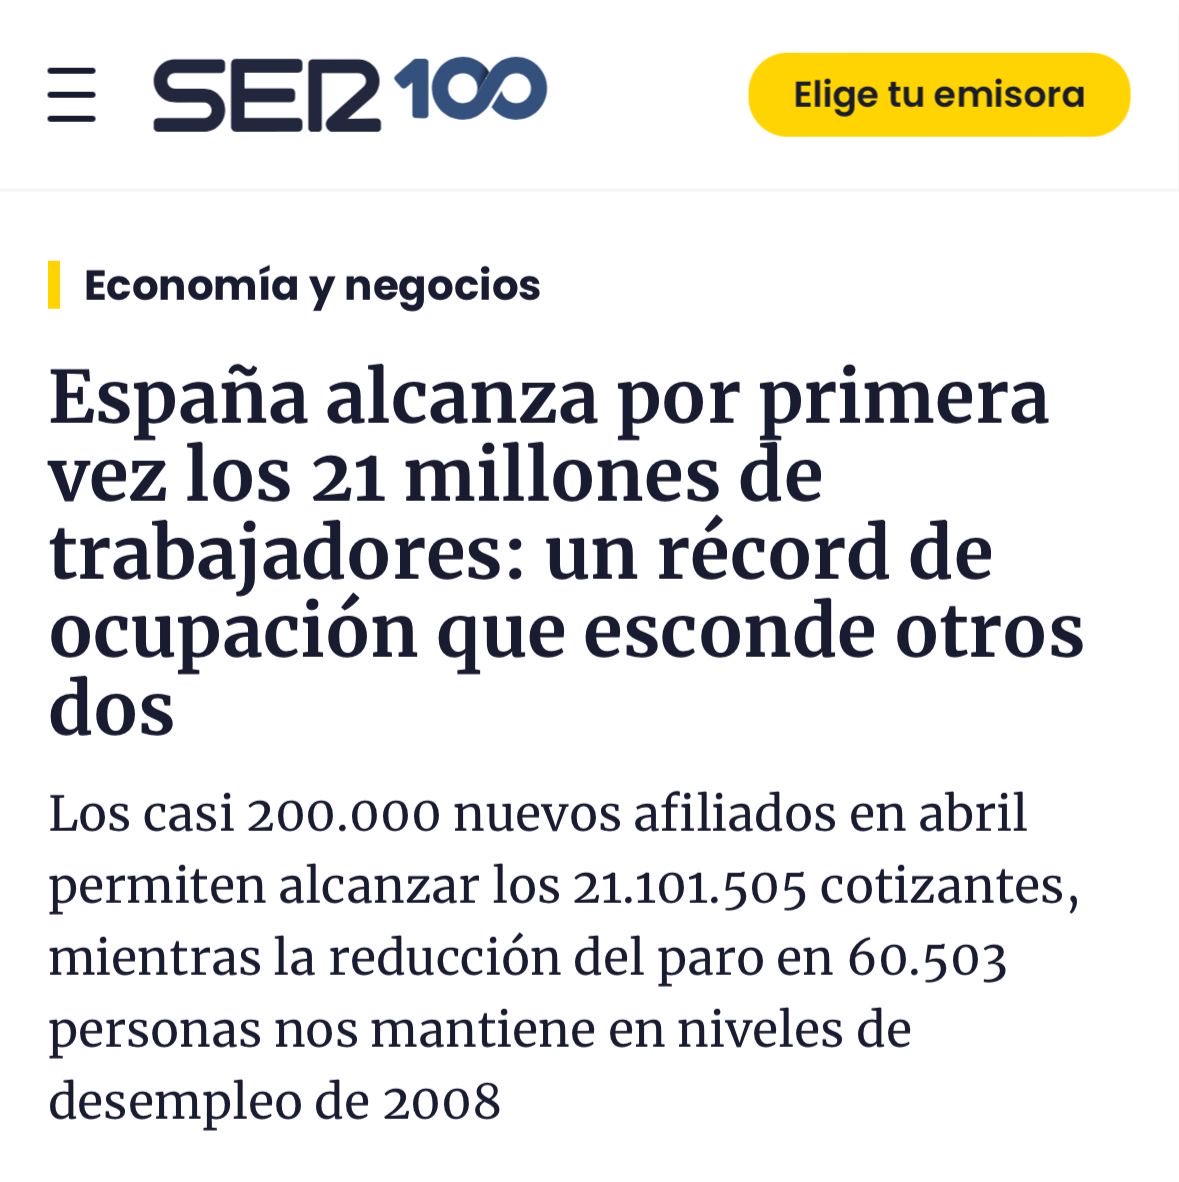 🗞️No hay mejor manera de empezar el día! España es de récord: ‼️✅El empleo bate récord histórico con más de 21 millones de afiliados a la Seguridad Social en abril. ✅El paro ⬇️ en 60.503 personas y se sitúa en 2,7 millones de personas, cifra más baja desde septiembre de 2008